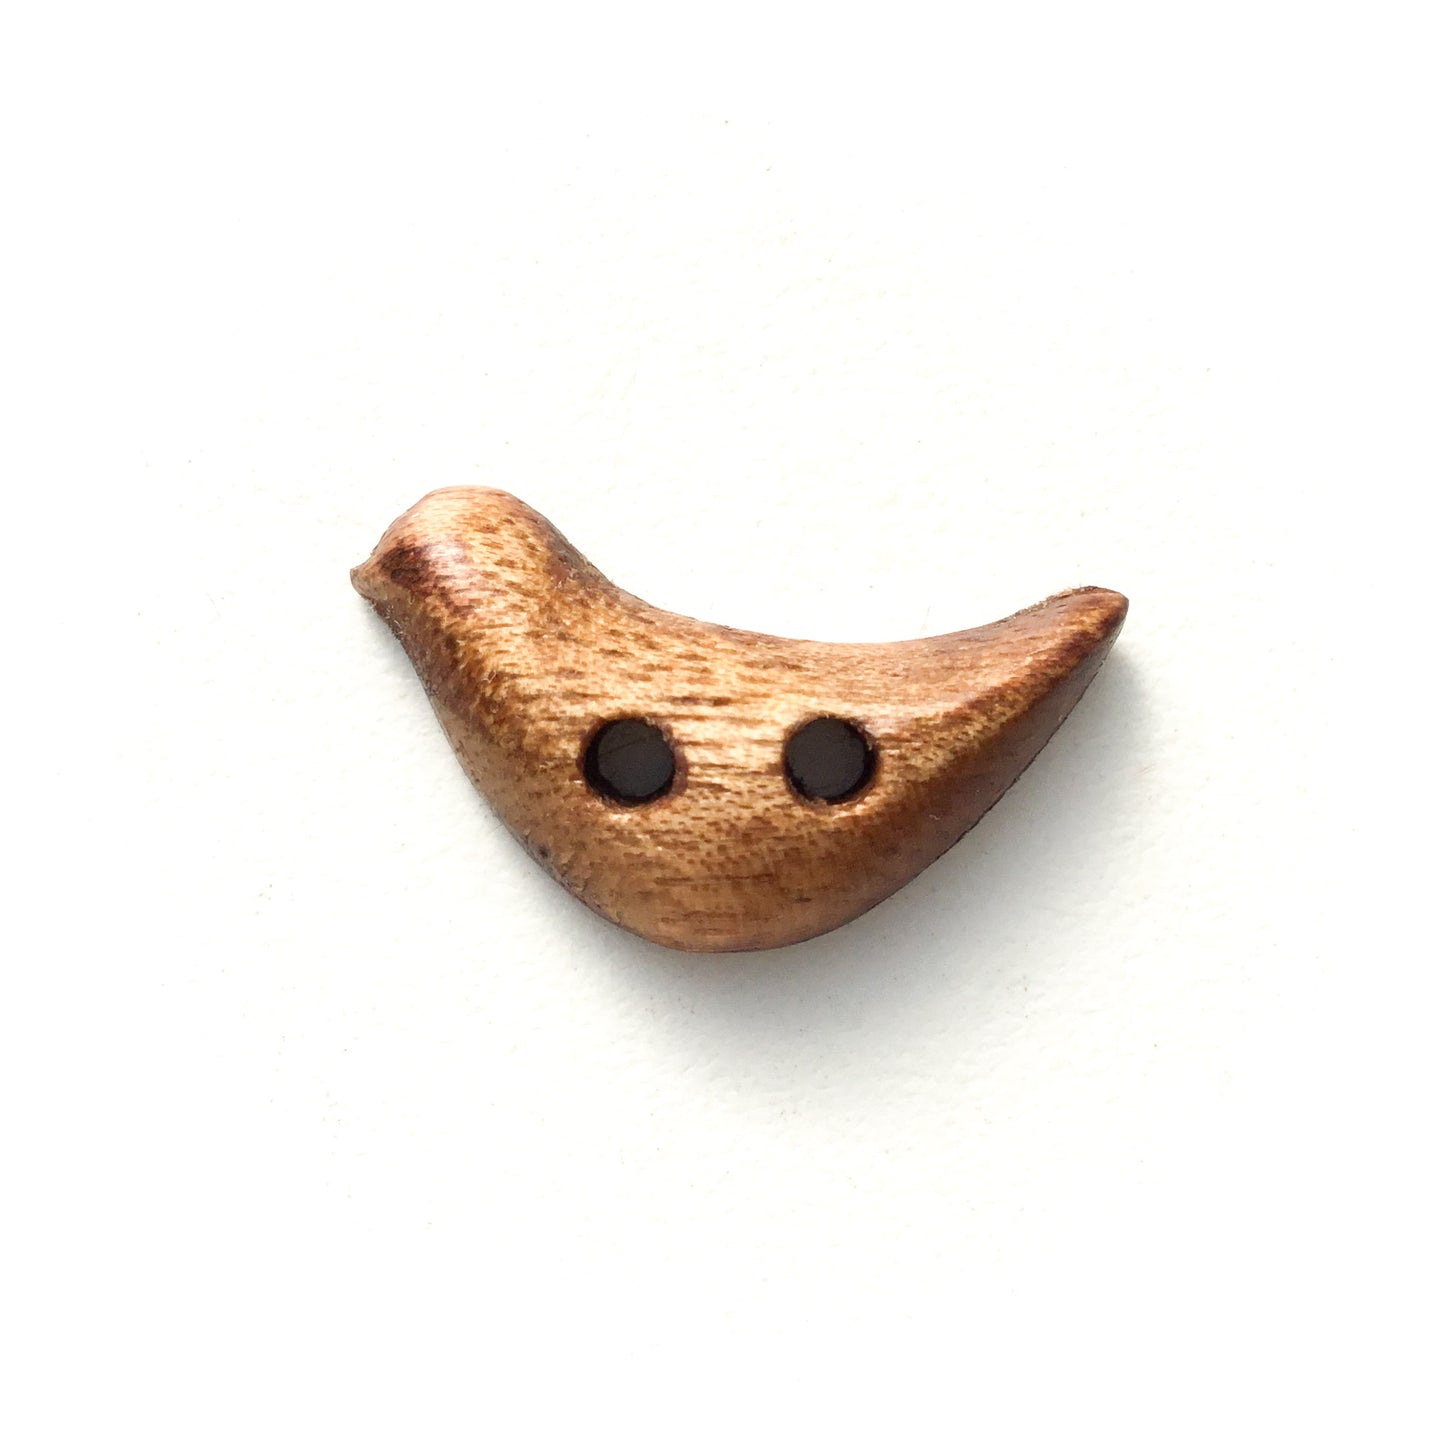 Wooden Song Bird Buttons - 1" x 7/16"